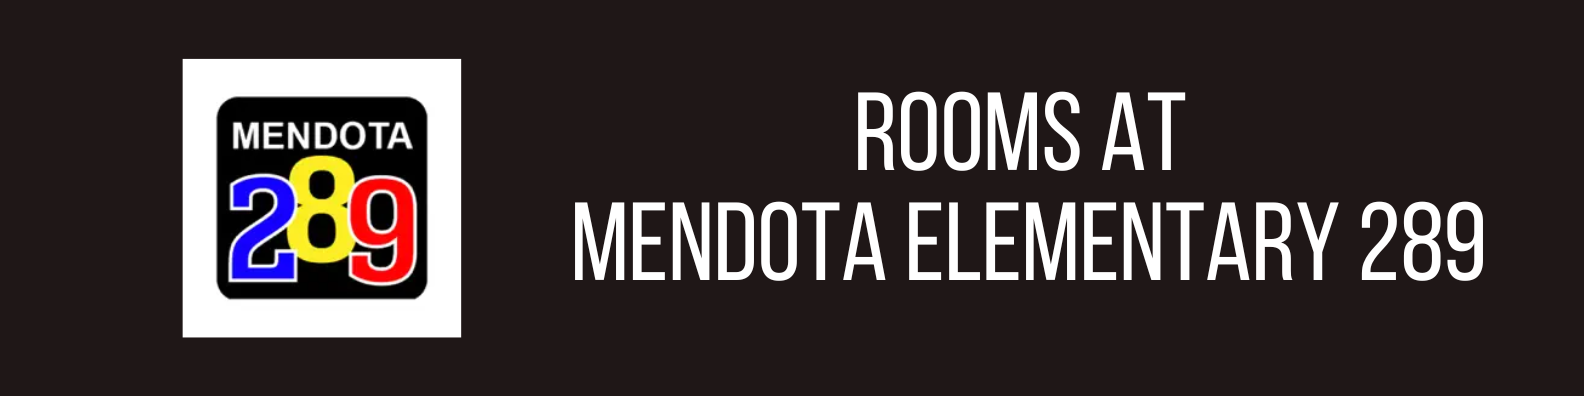 Mendota Rooms